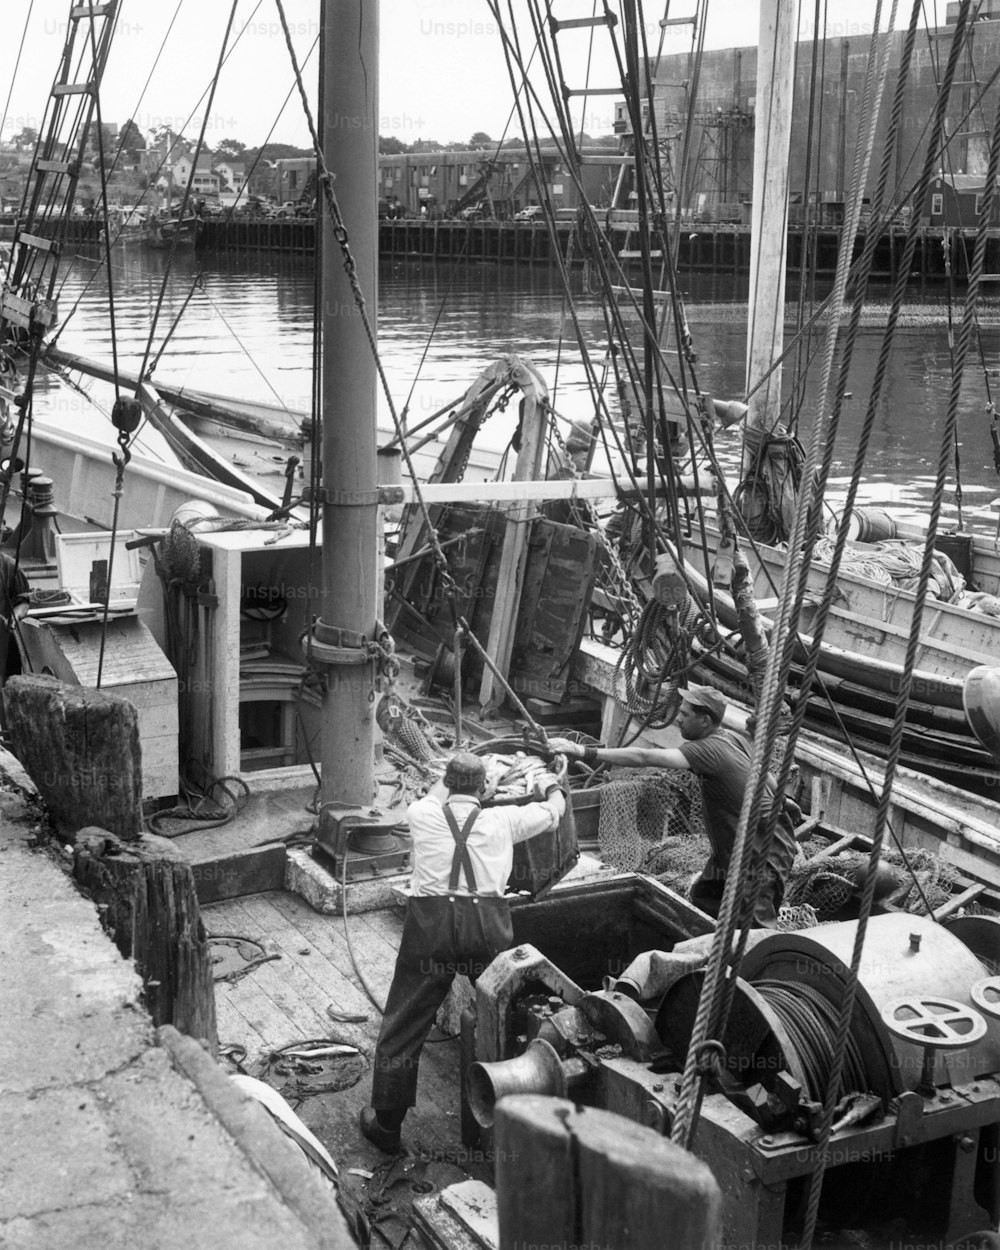 STATI UNITI - 1950 CIRCA: Uomini che lavorano su una barca da pesca.